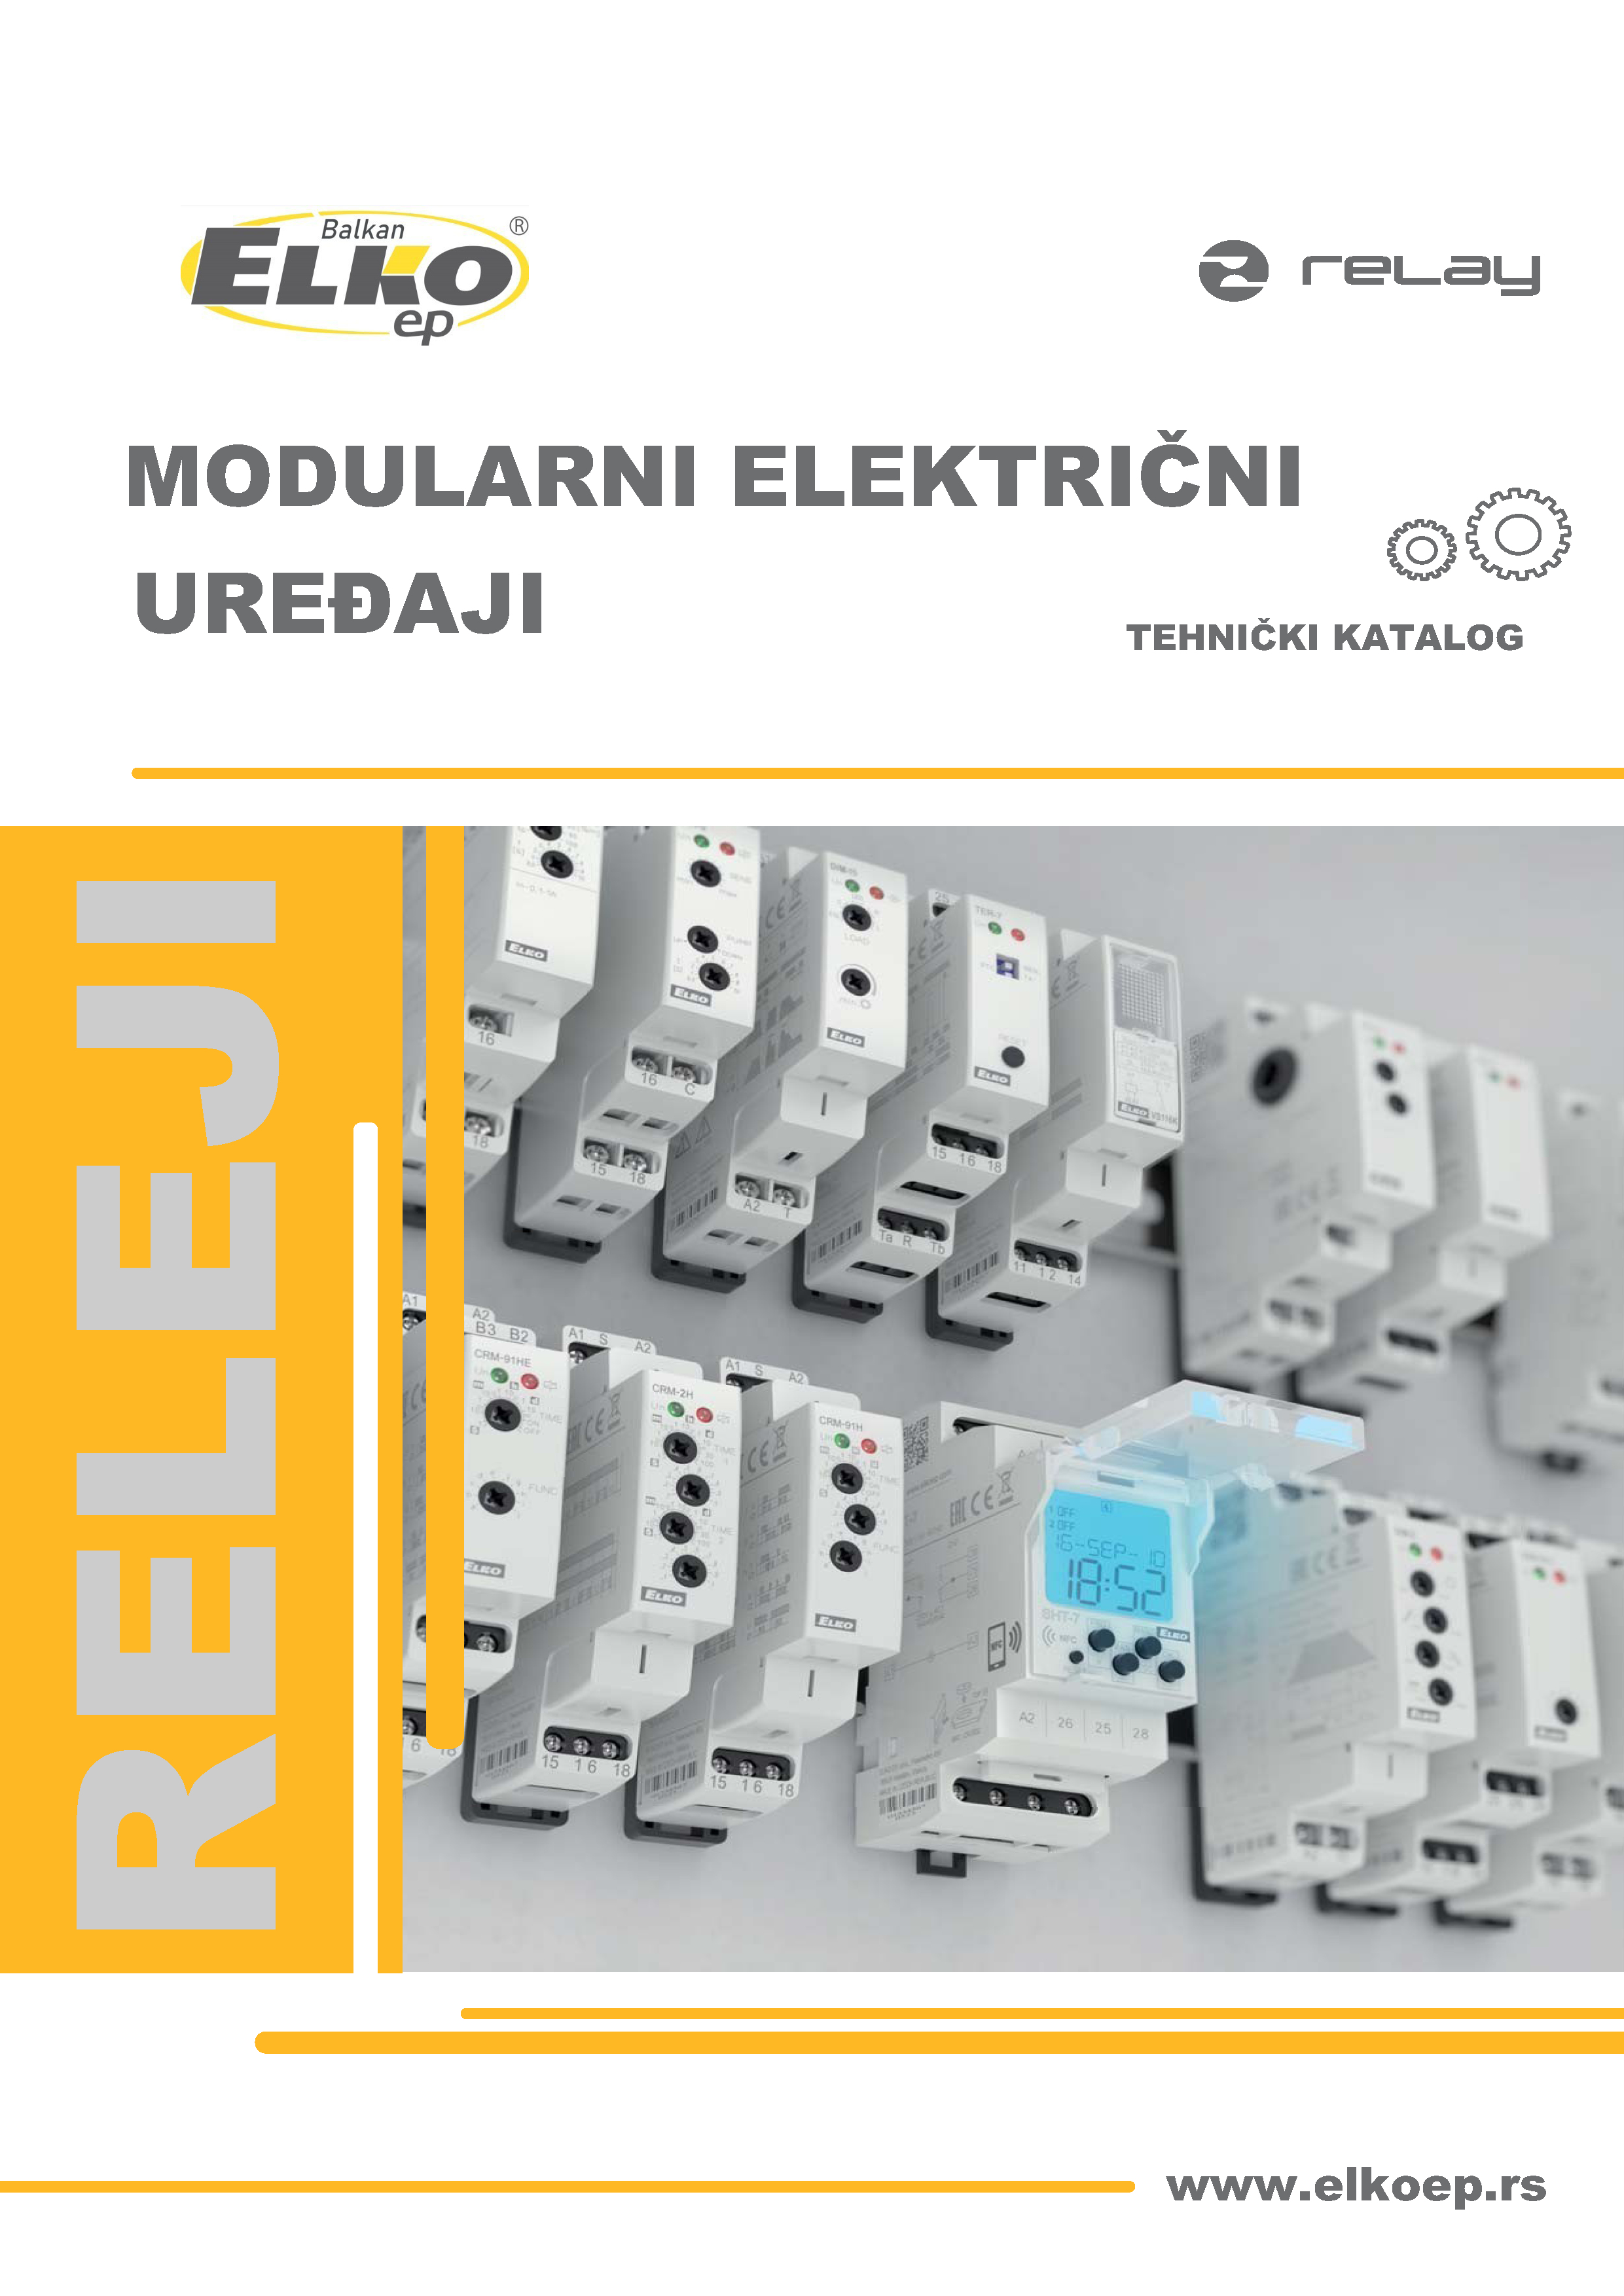 Modularni električni uređaji preview